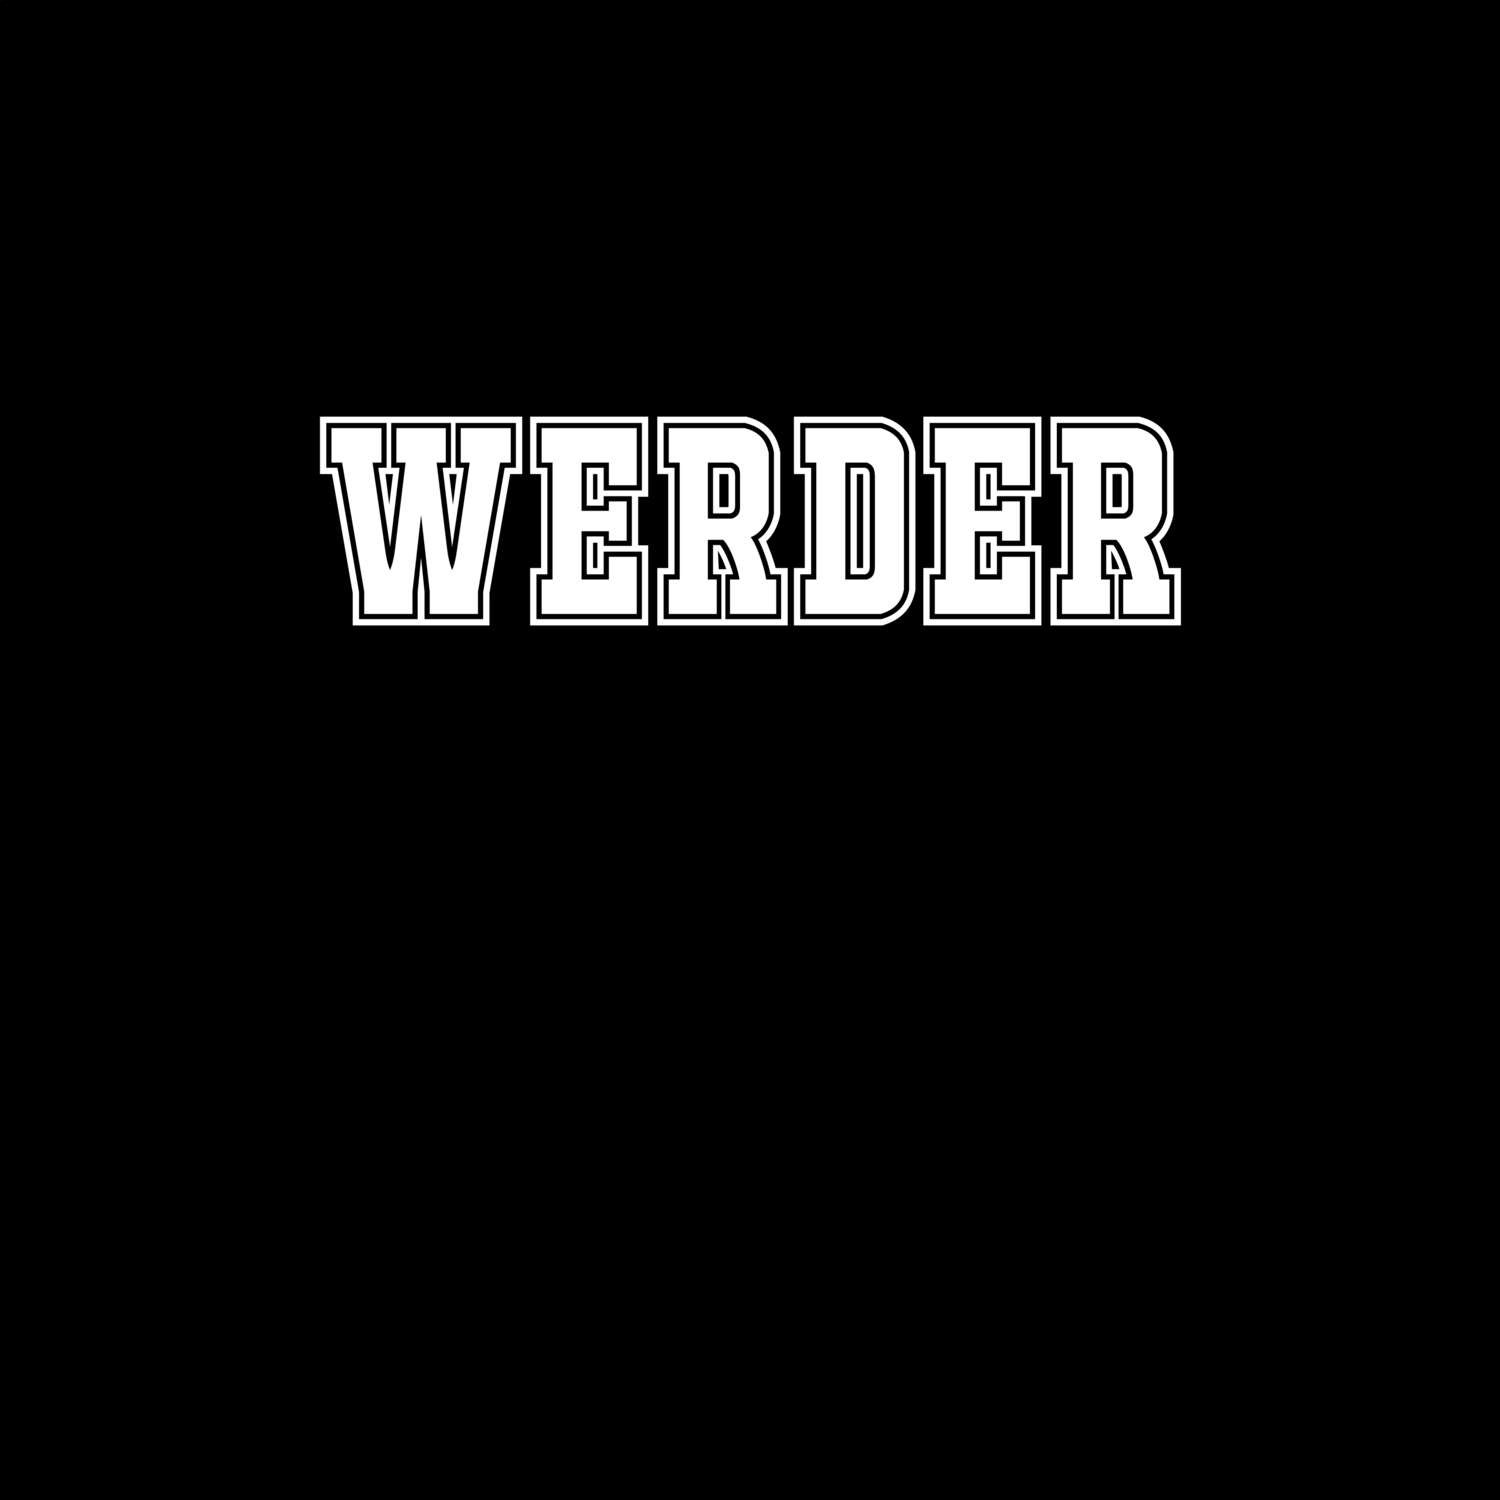 Werder T-Shirt »Classic«